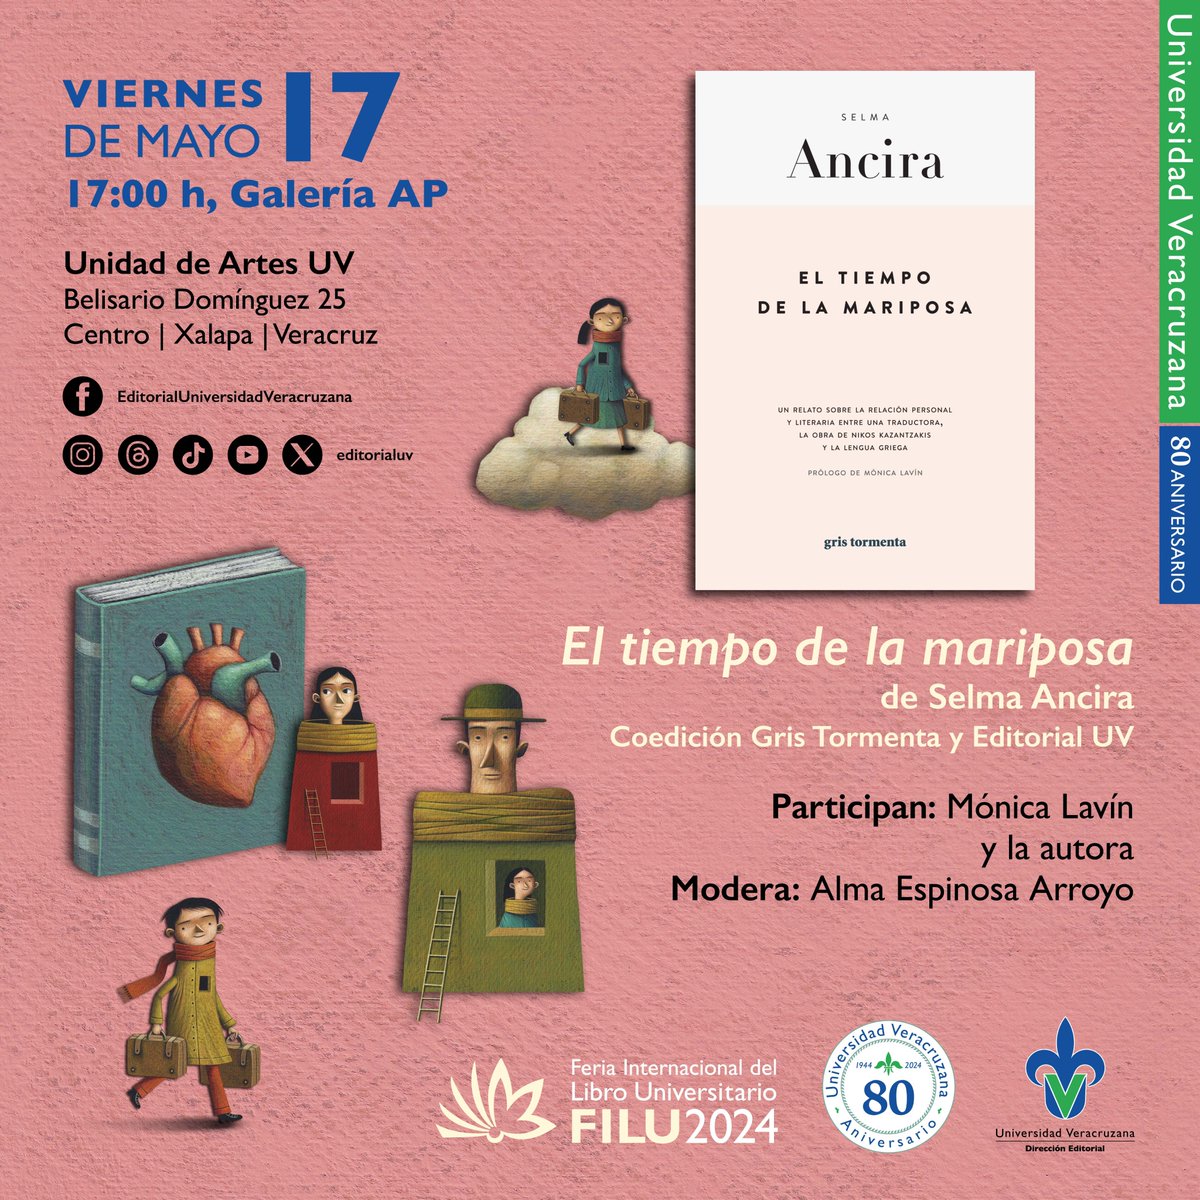 📚📣📣¡La escritora Selma Ancira estará en @FILU_UV! Asiste el 17 de mayo a la presentación de su libro El tiempo de la mariposa. ⌚️ 17:00 h 🏦 Galería AP I Unidad de Artes UV #EditorialUV #FILU2024 #Xalapa